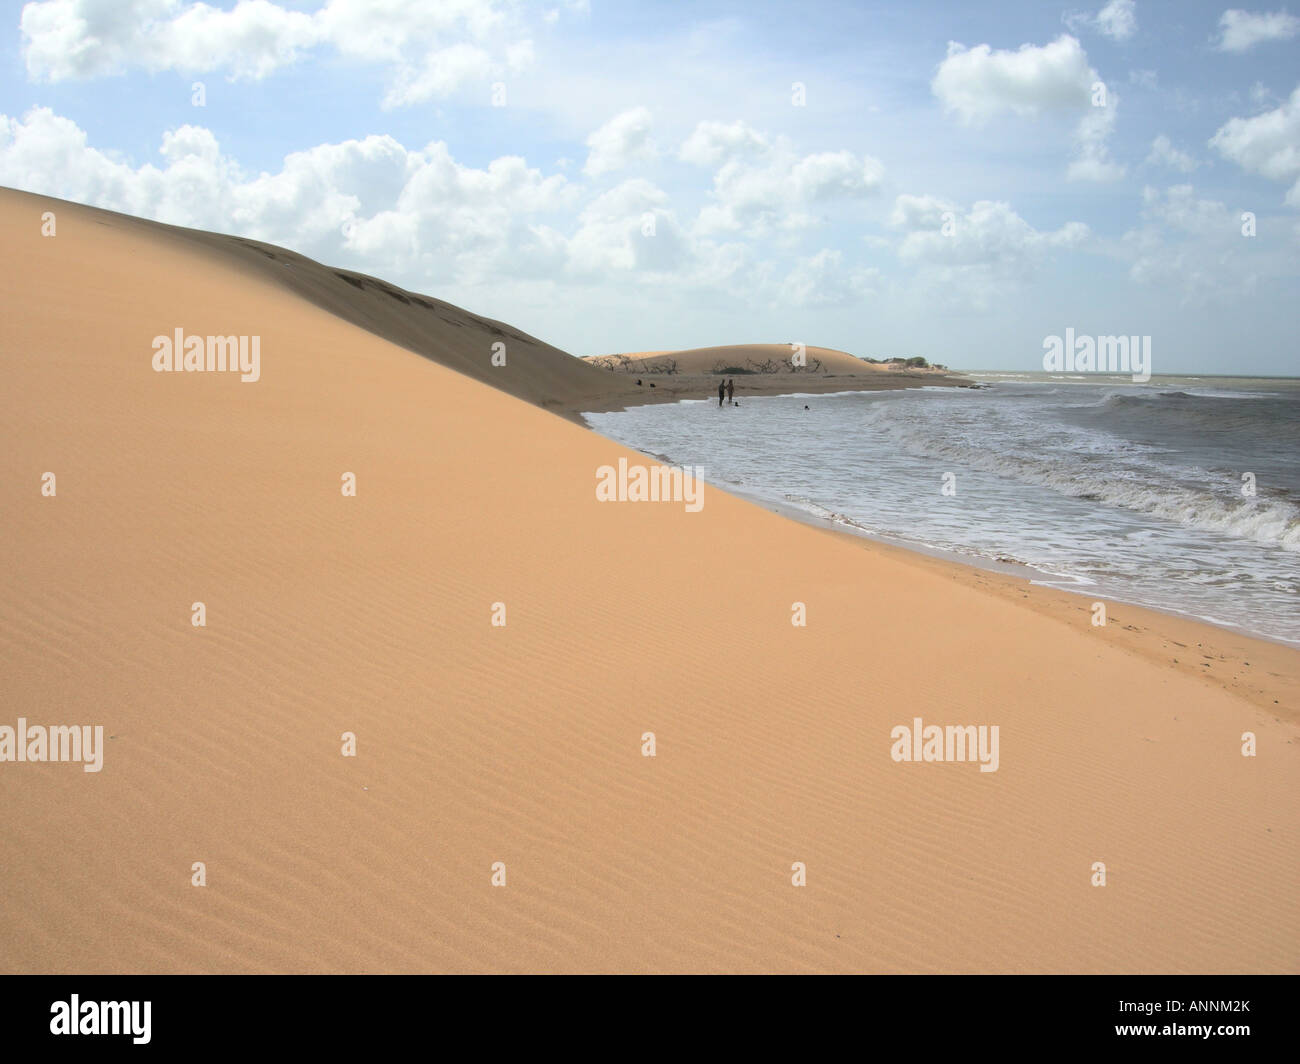 Sand dune beach, Peninsula de paraguana, falcon state, Venezuela Stock Photo